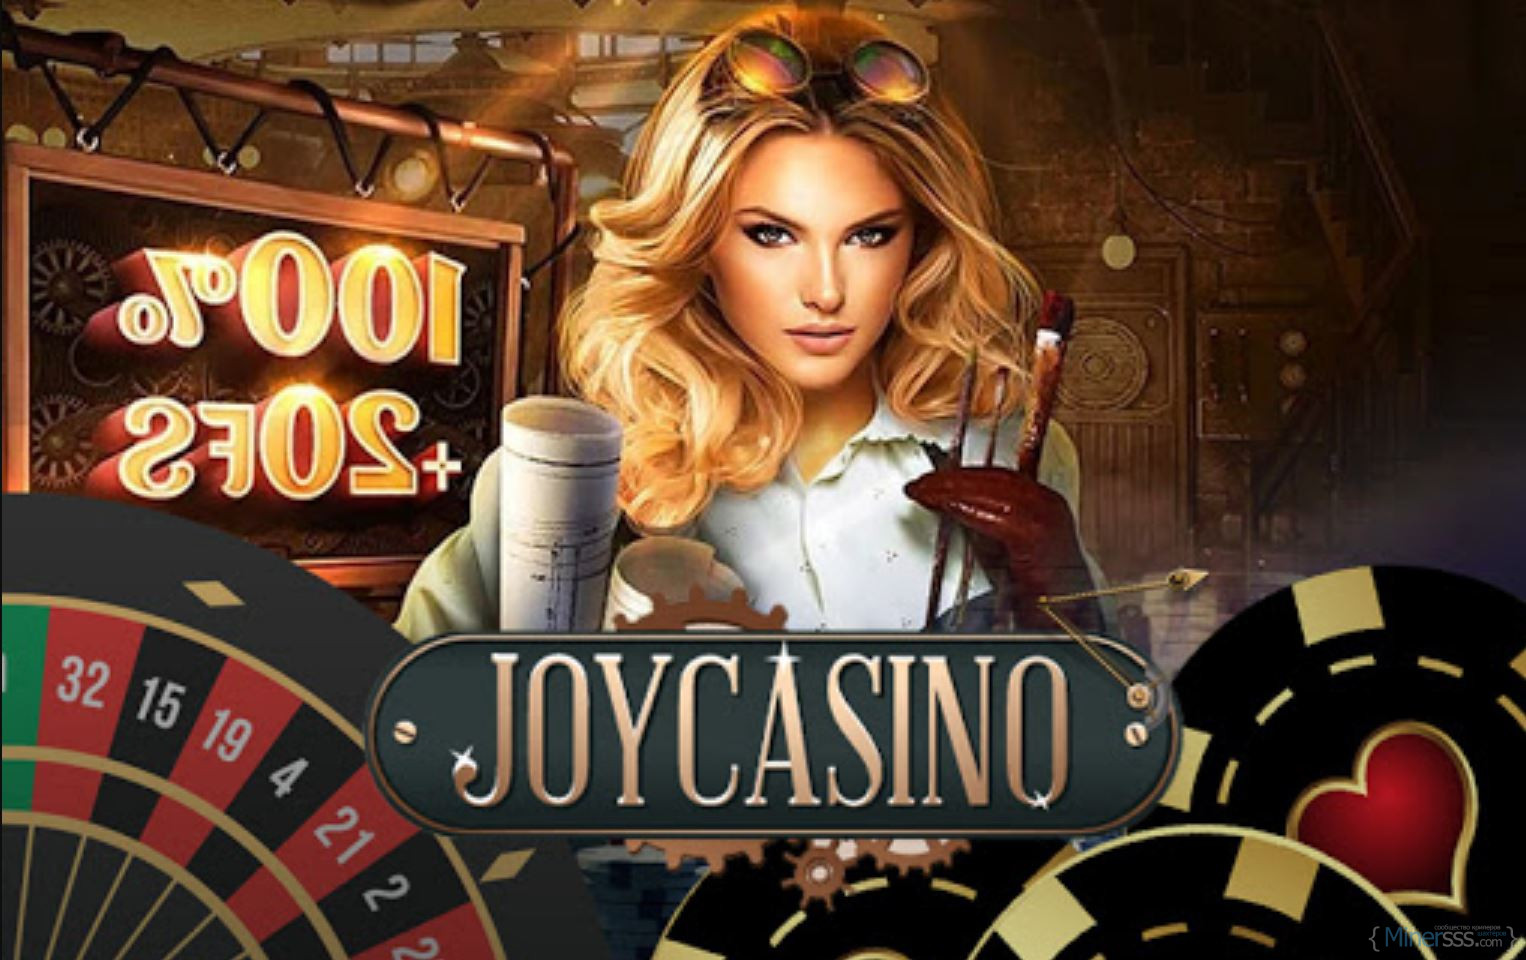 Joy casino игроков рейтинг. Реклама казино. Джой казино. Самое престижное казино.